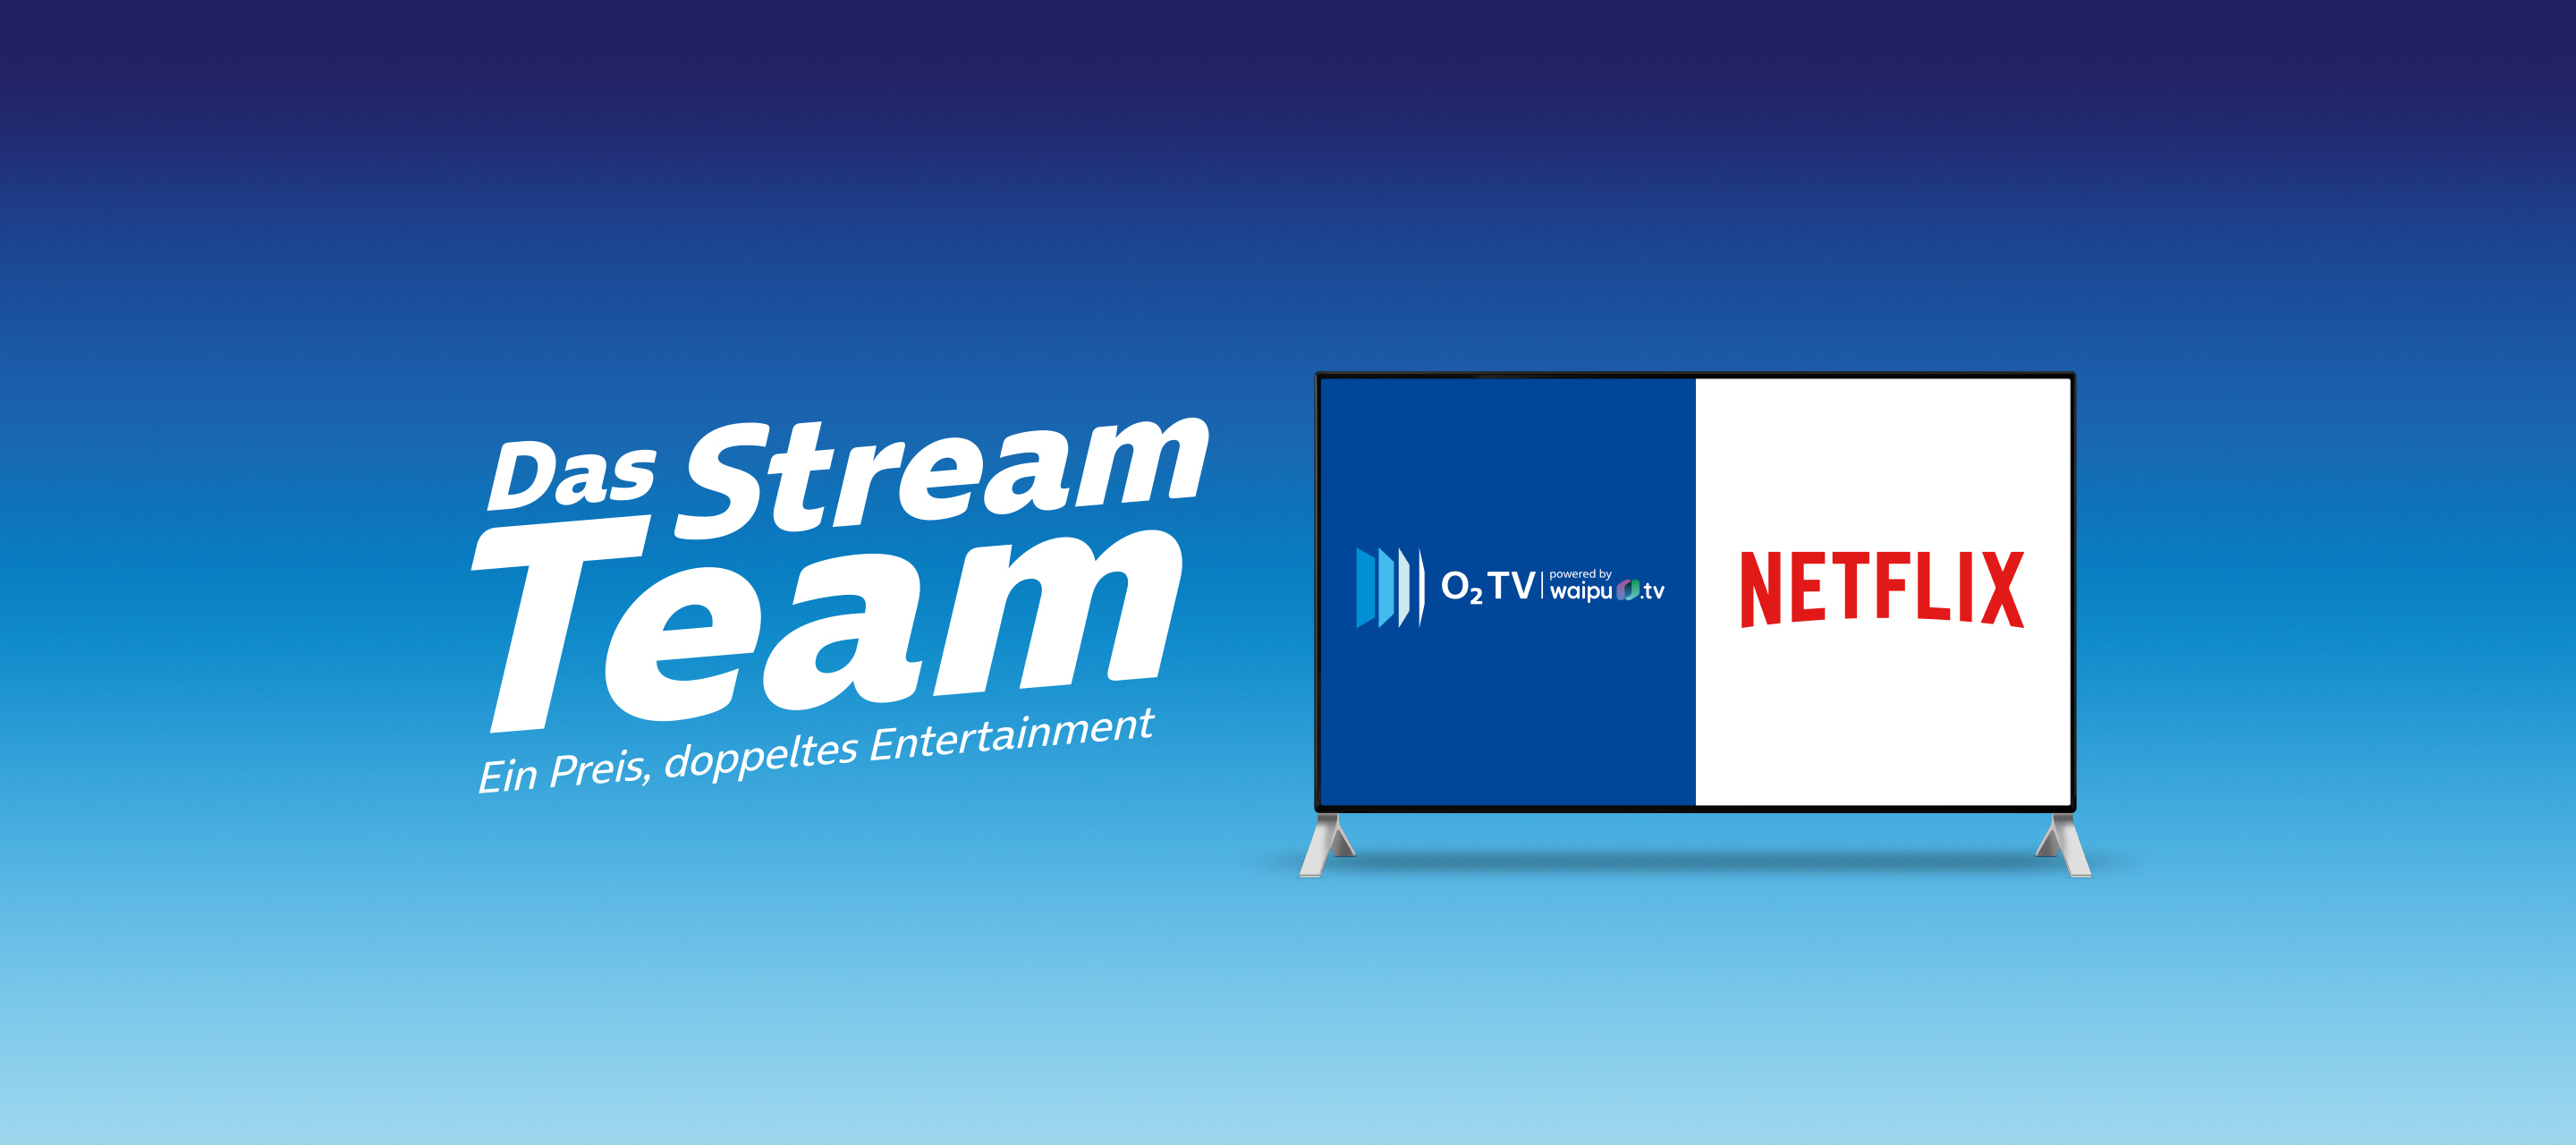 o2 TV L & Netflix - Das Stream Team